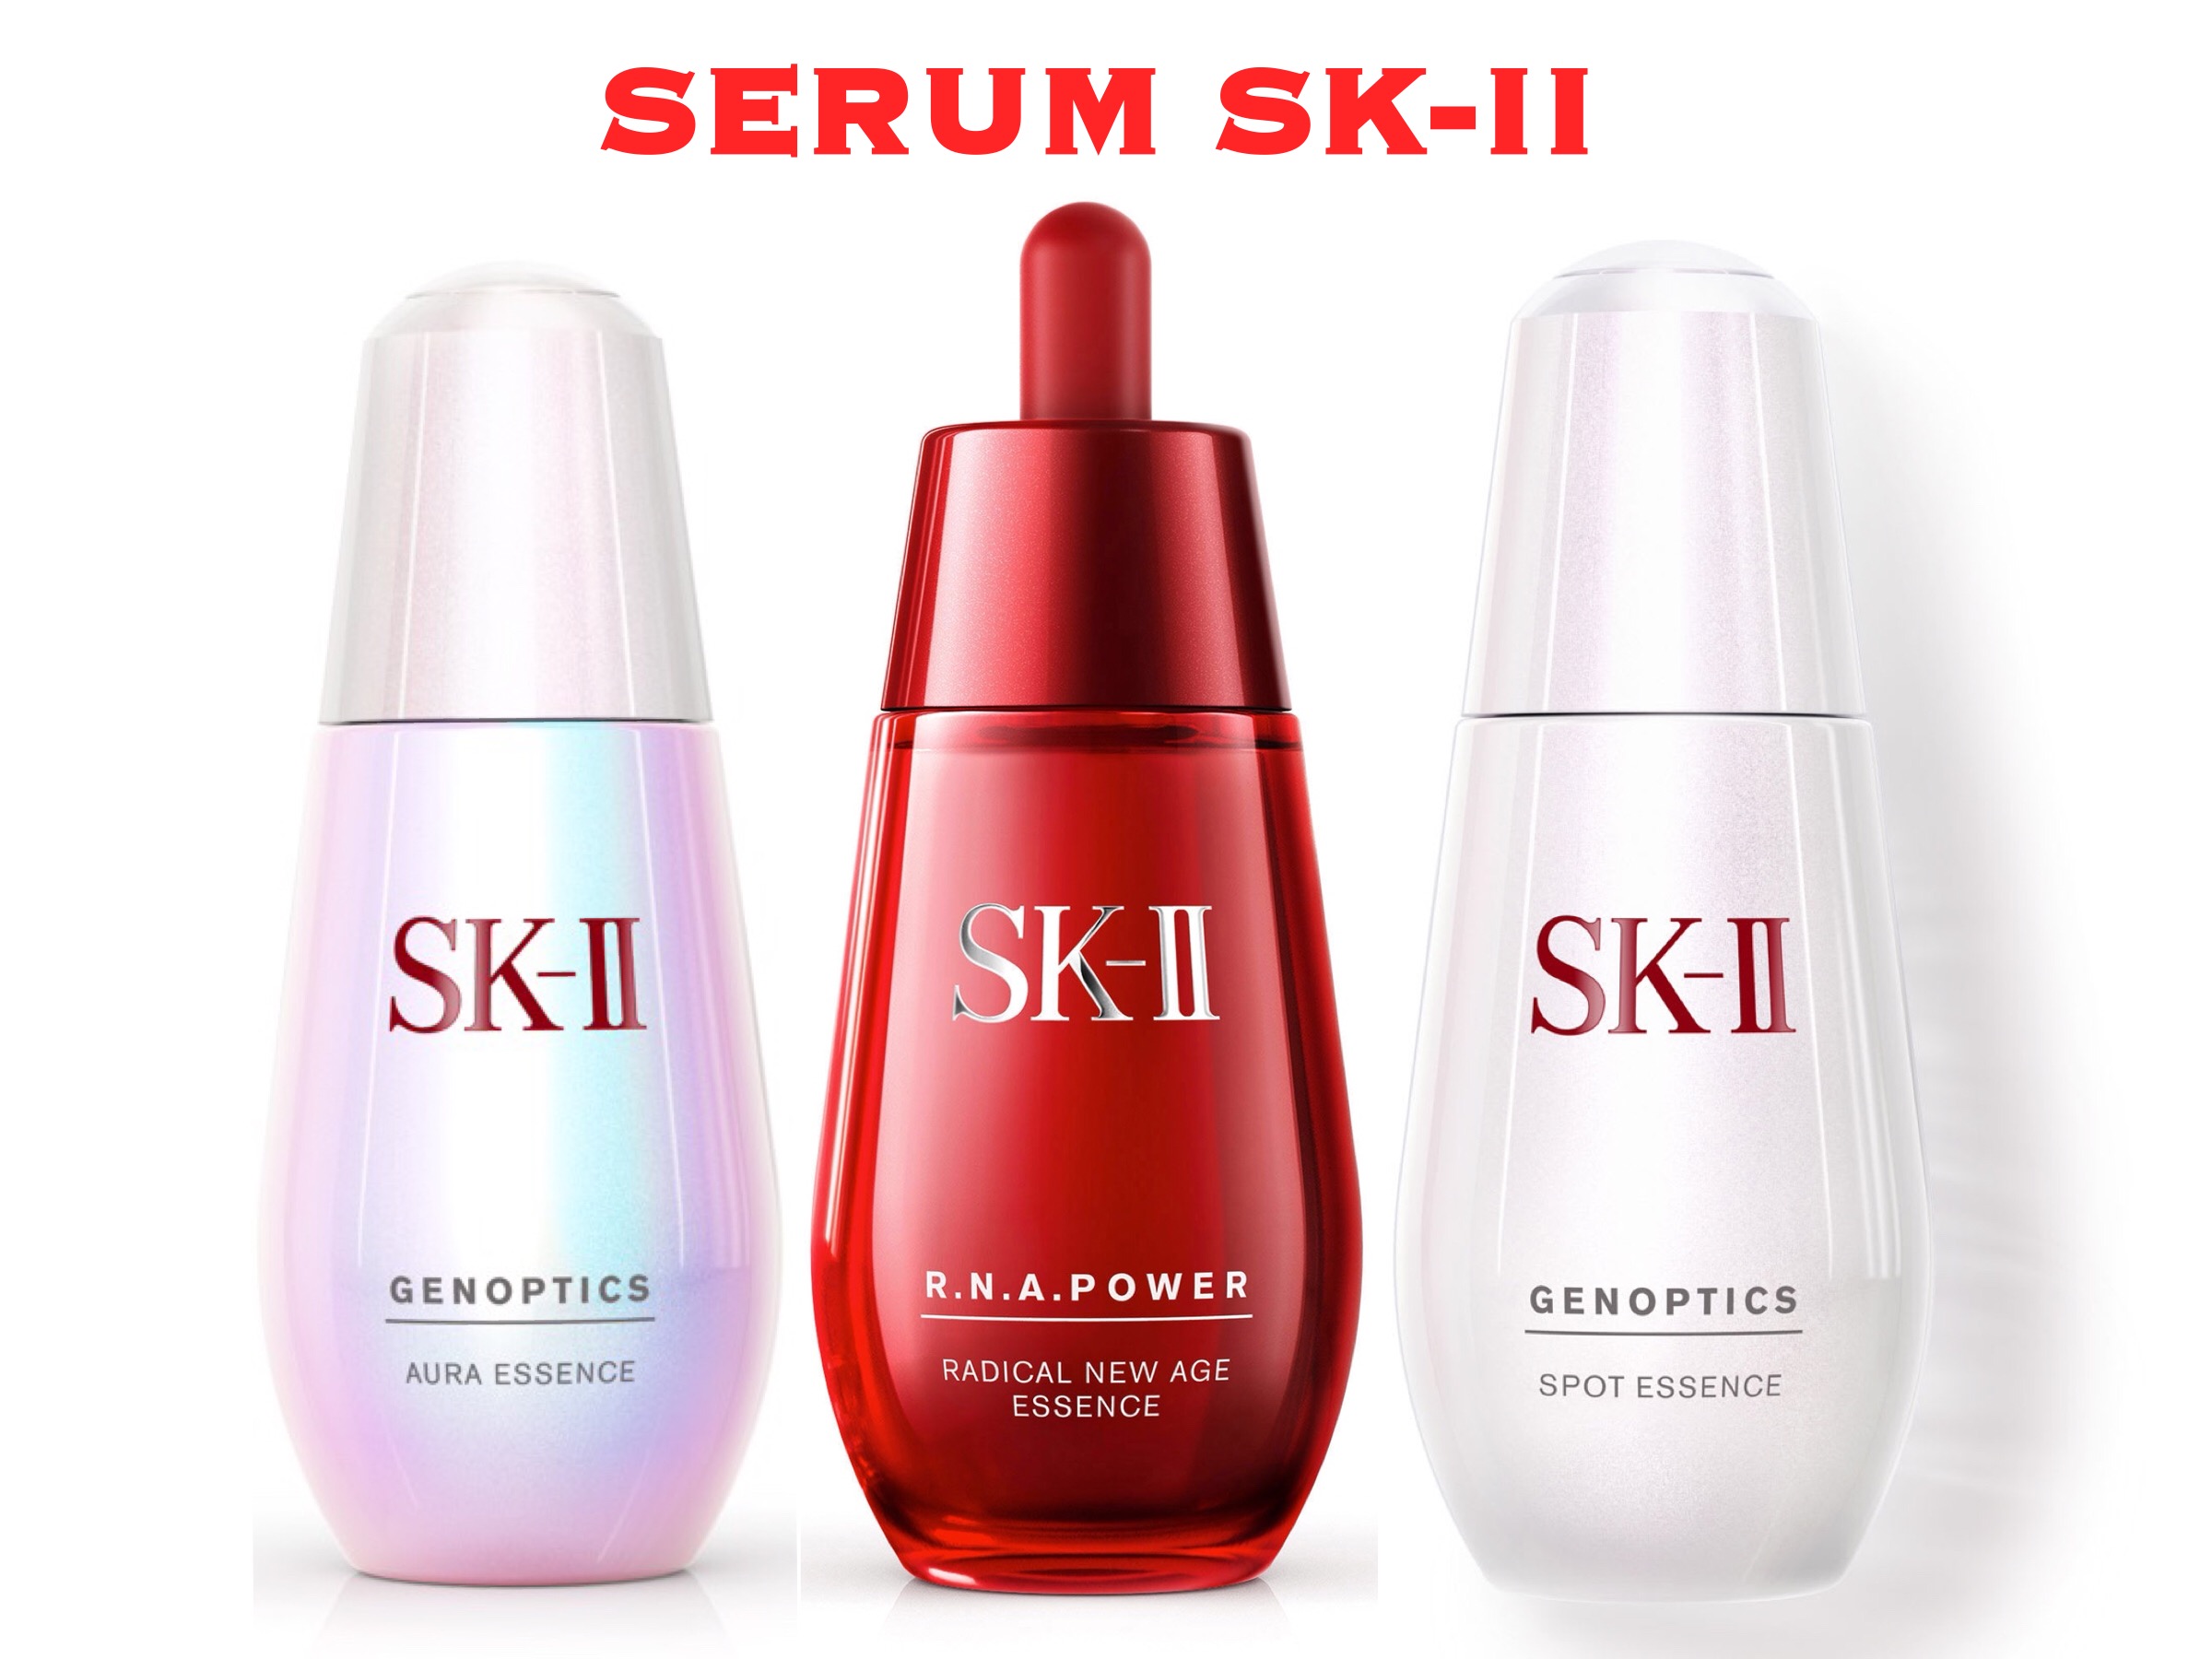 Serum SK-II có mấy loại, loại nào tốt nhất hiện nay?